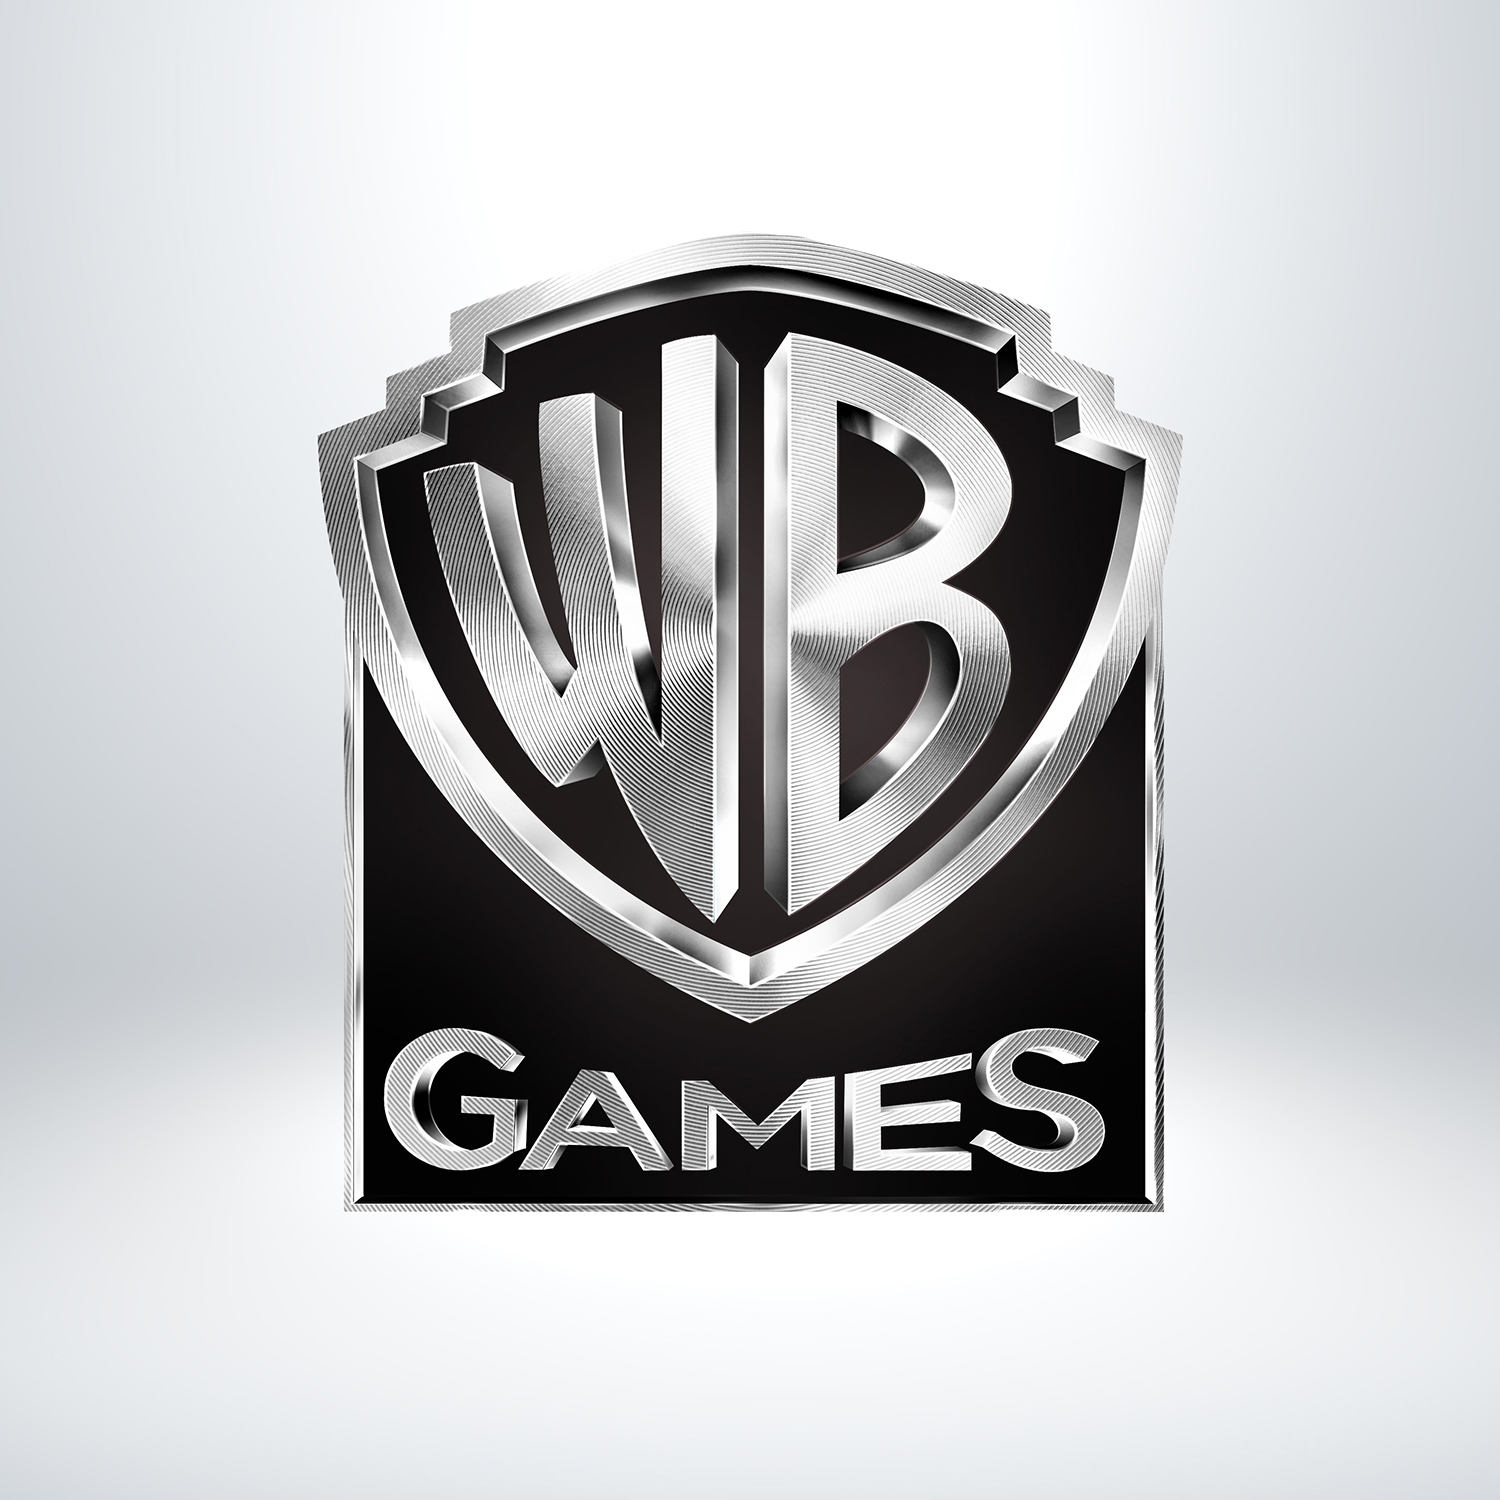 WB Games - Avozar | Design Studio in Los Angeles | 323 286-9563